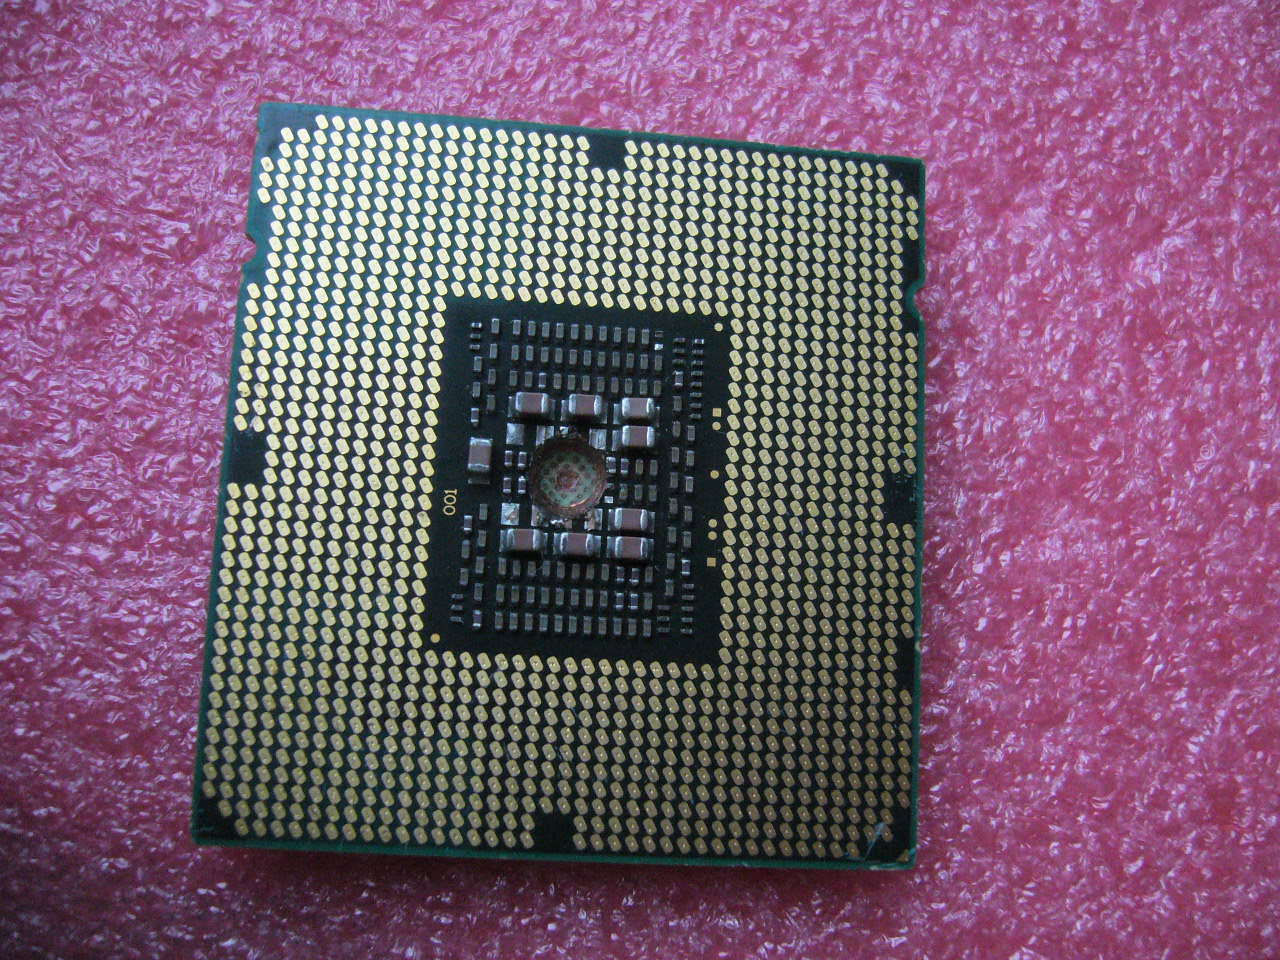 QTY 1x Intel ES CPU E5-2440 6-Cores 2.4Ghz LGA1356 QBGH C1 Damaged but Working - zum Schließen ins Bild klicken